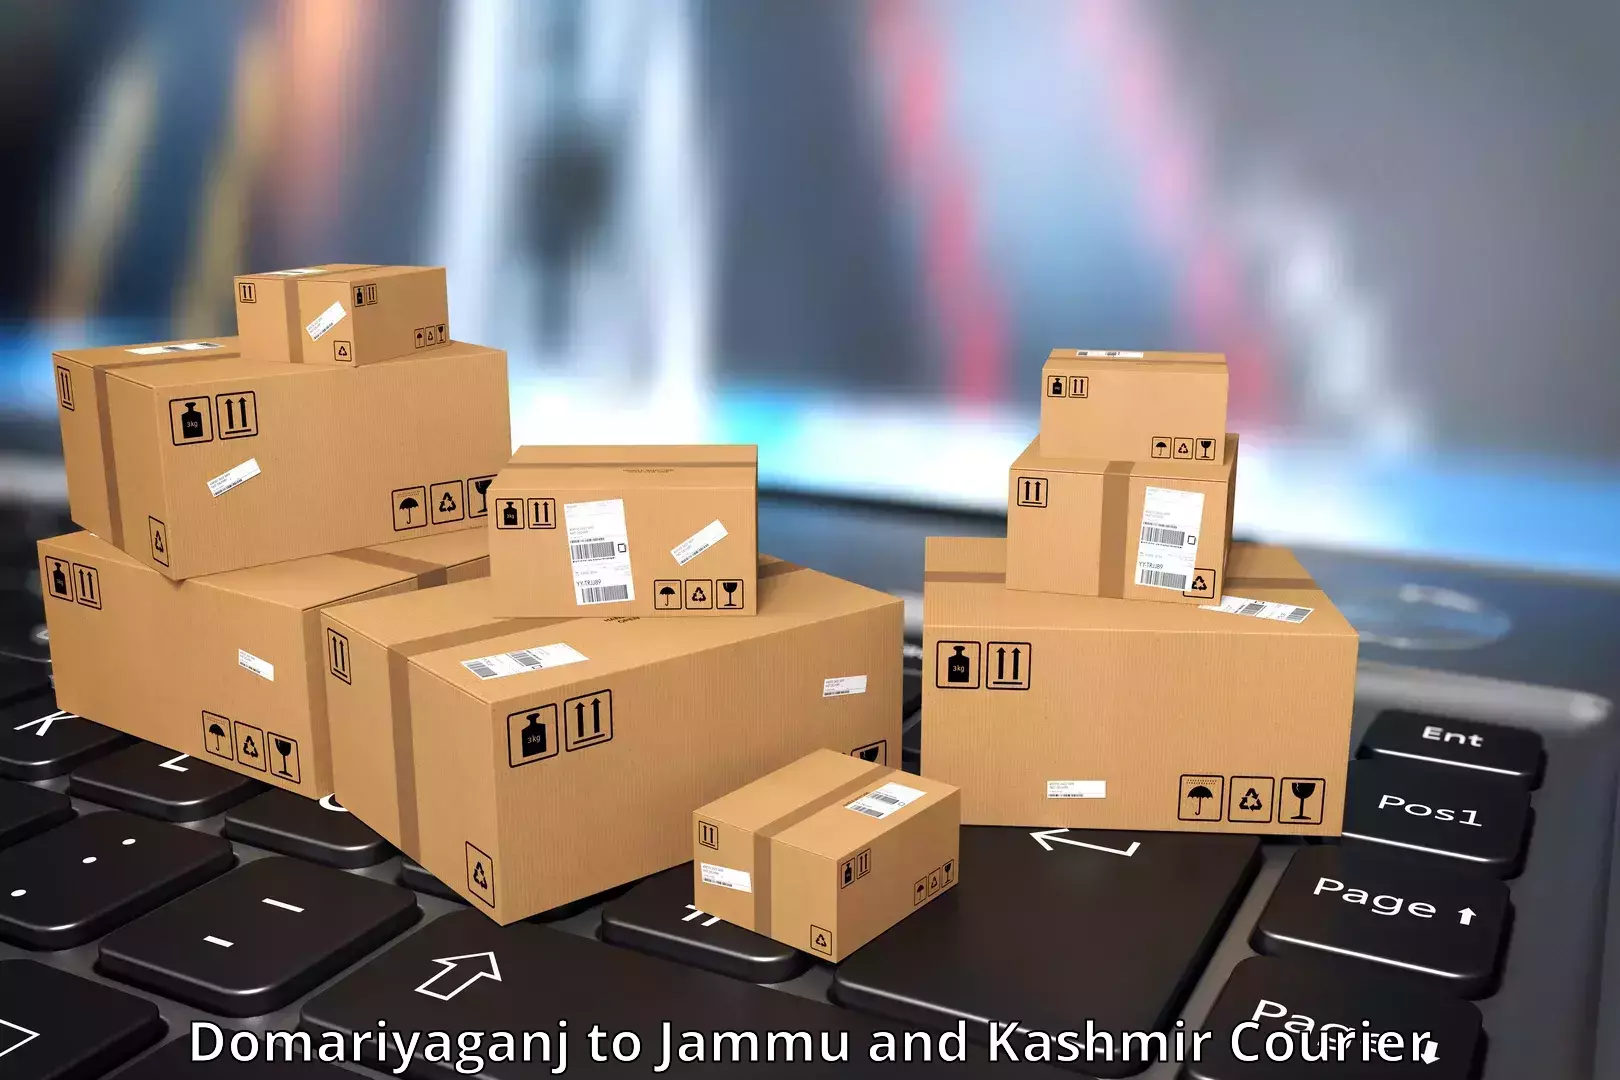 High-capacity shipping options in Domariyaganj to RS Pura